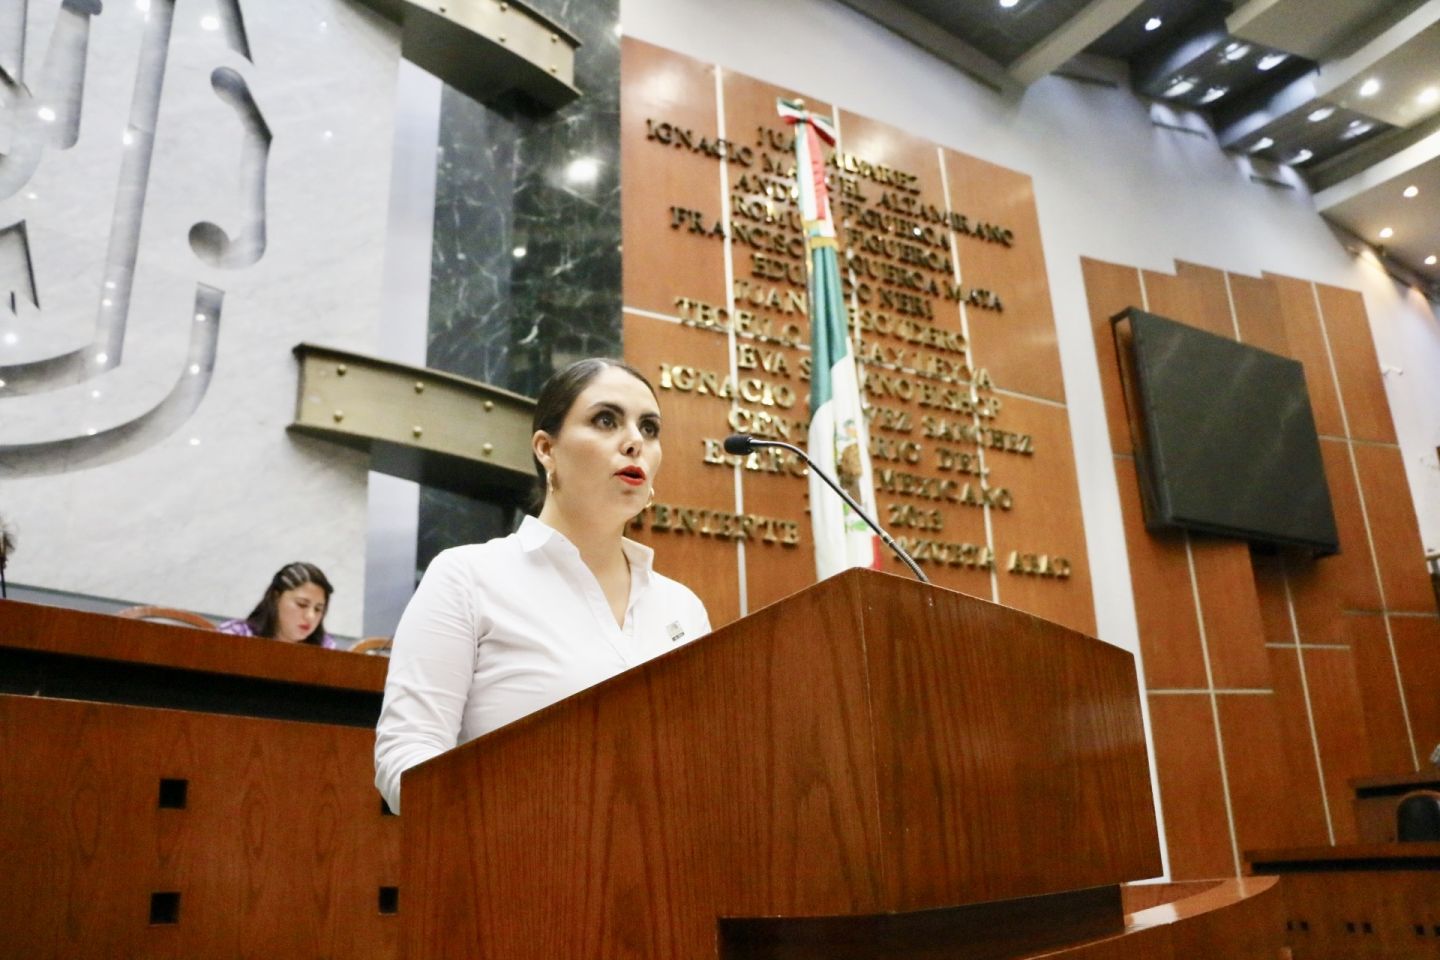 Condena Dimna Salgado hostigamiento contra diputada en el Congreso local 